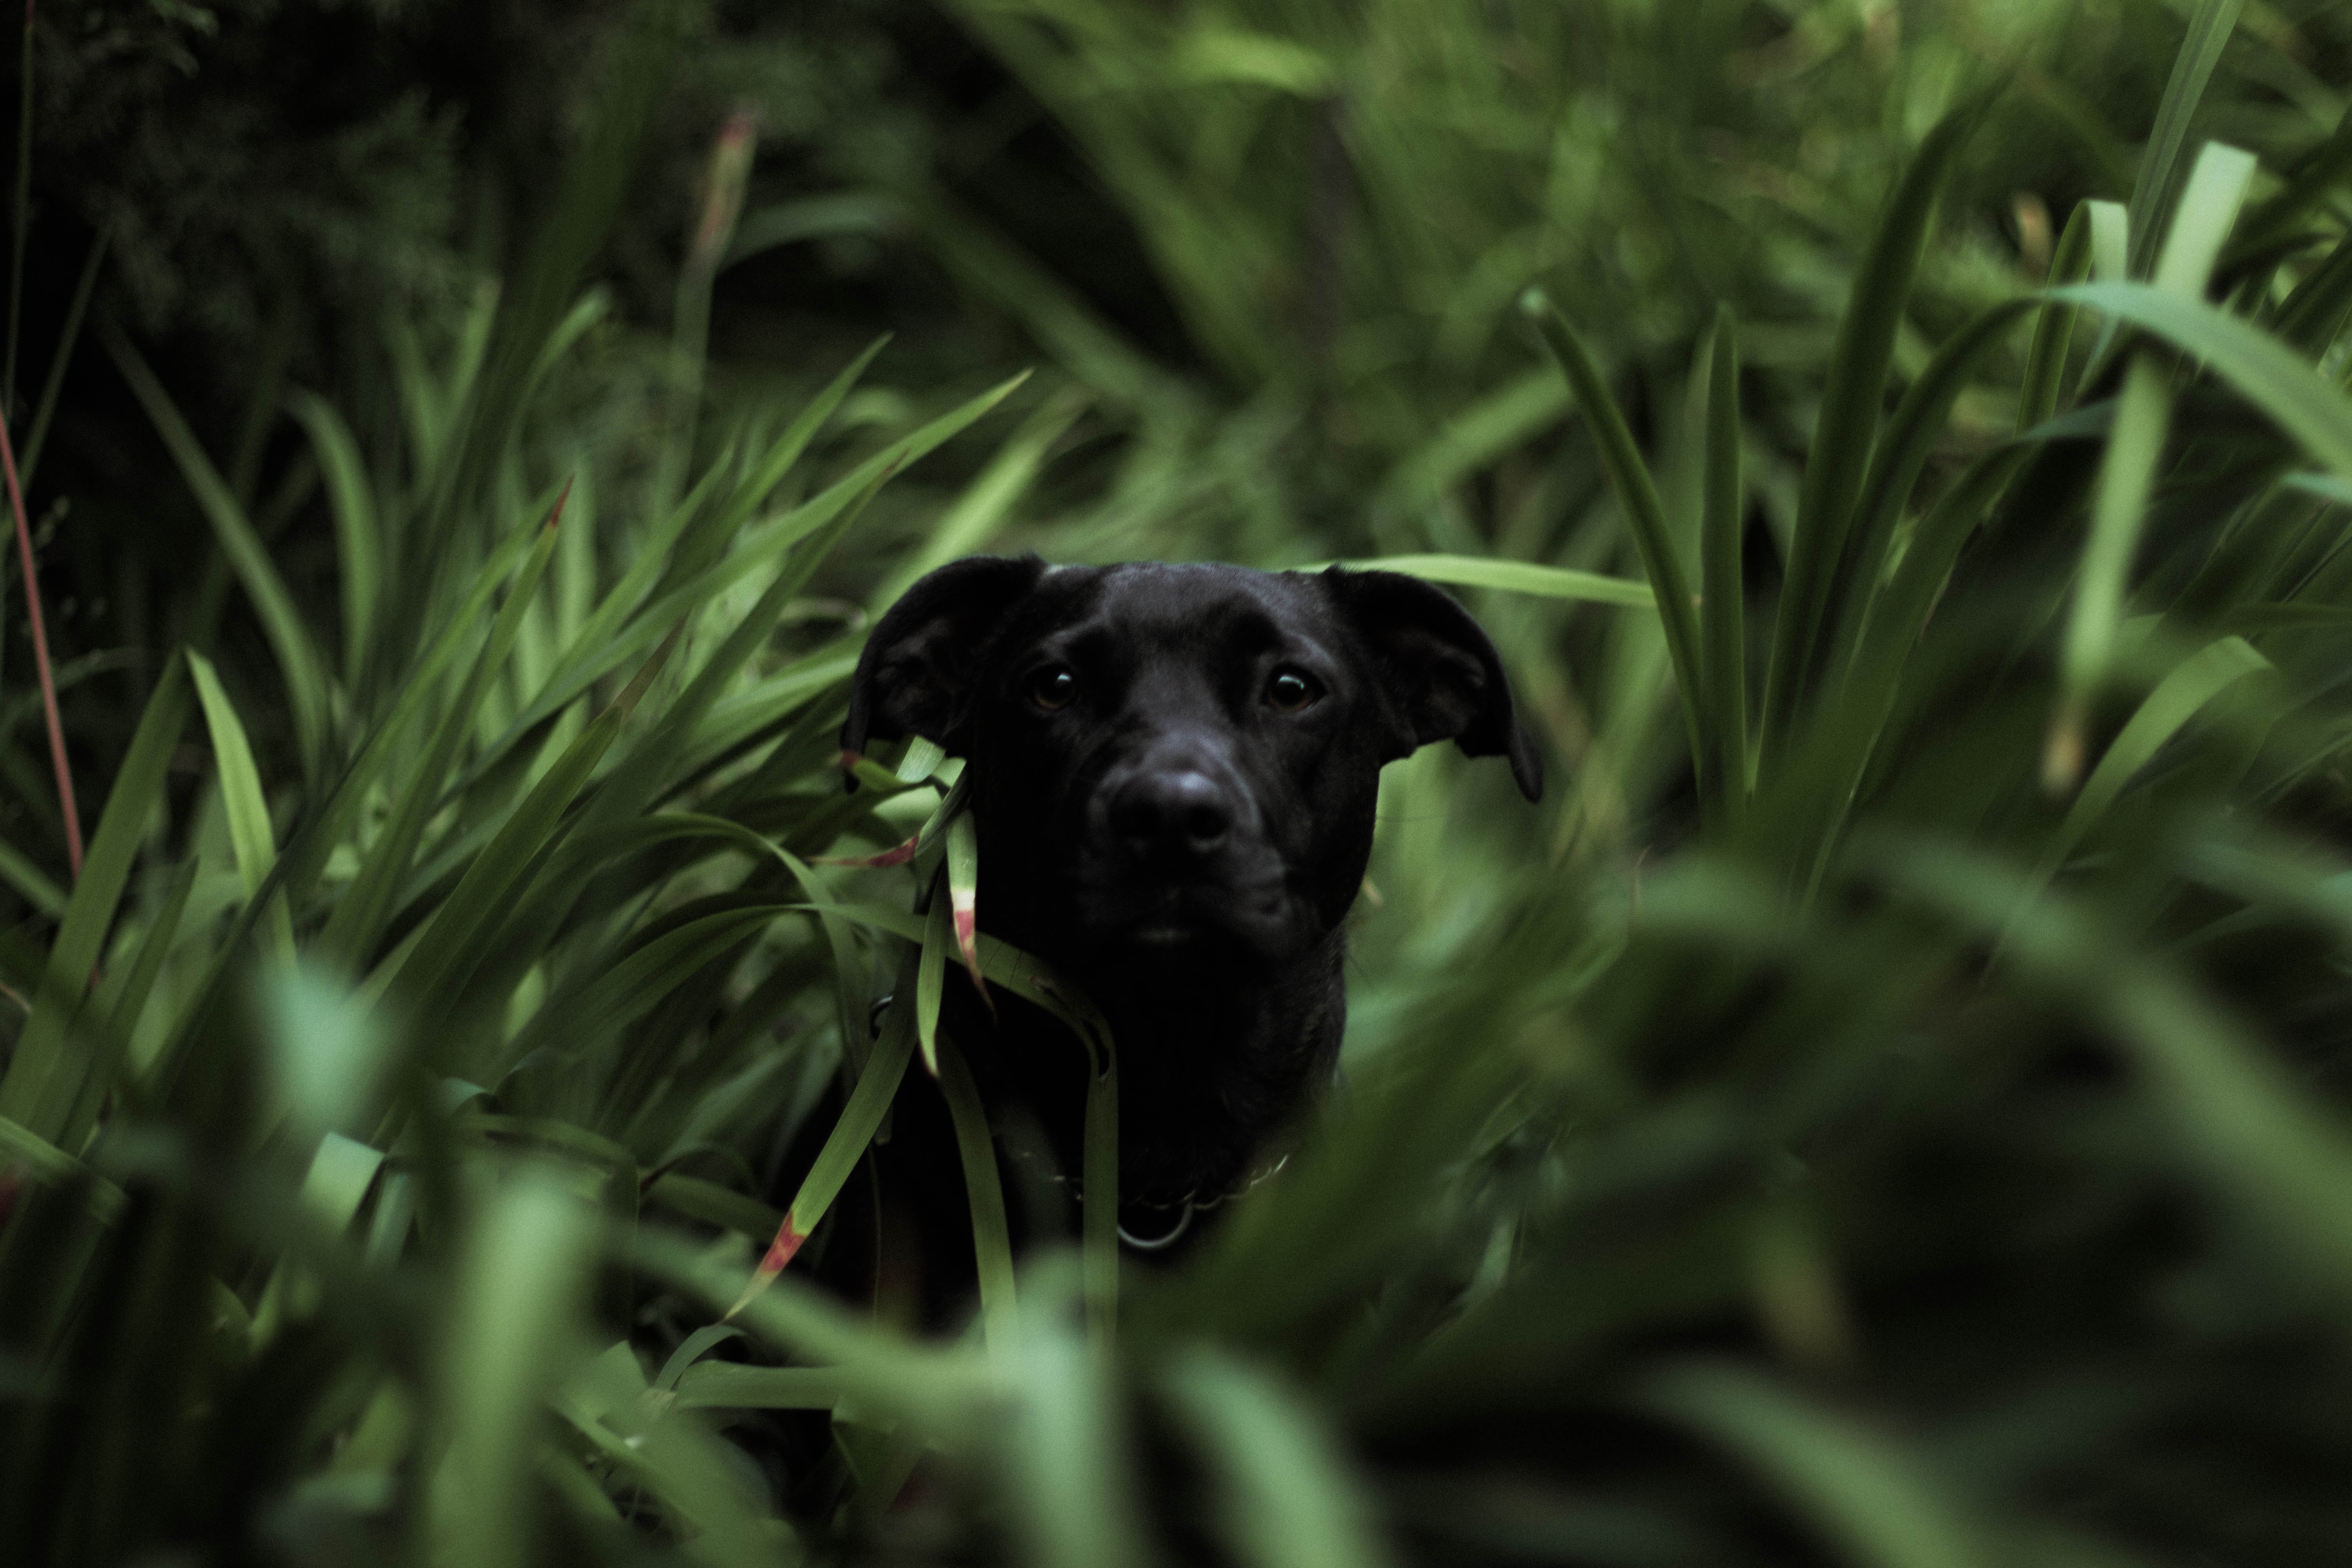 Skeddader pet deterrent - dog in grass